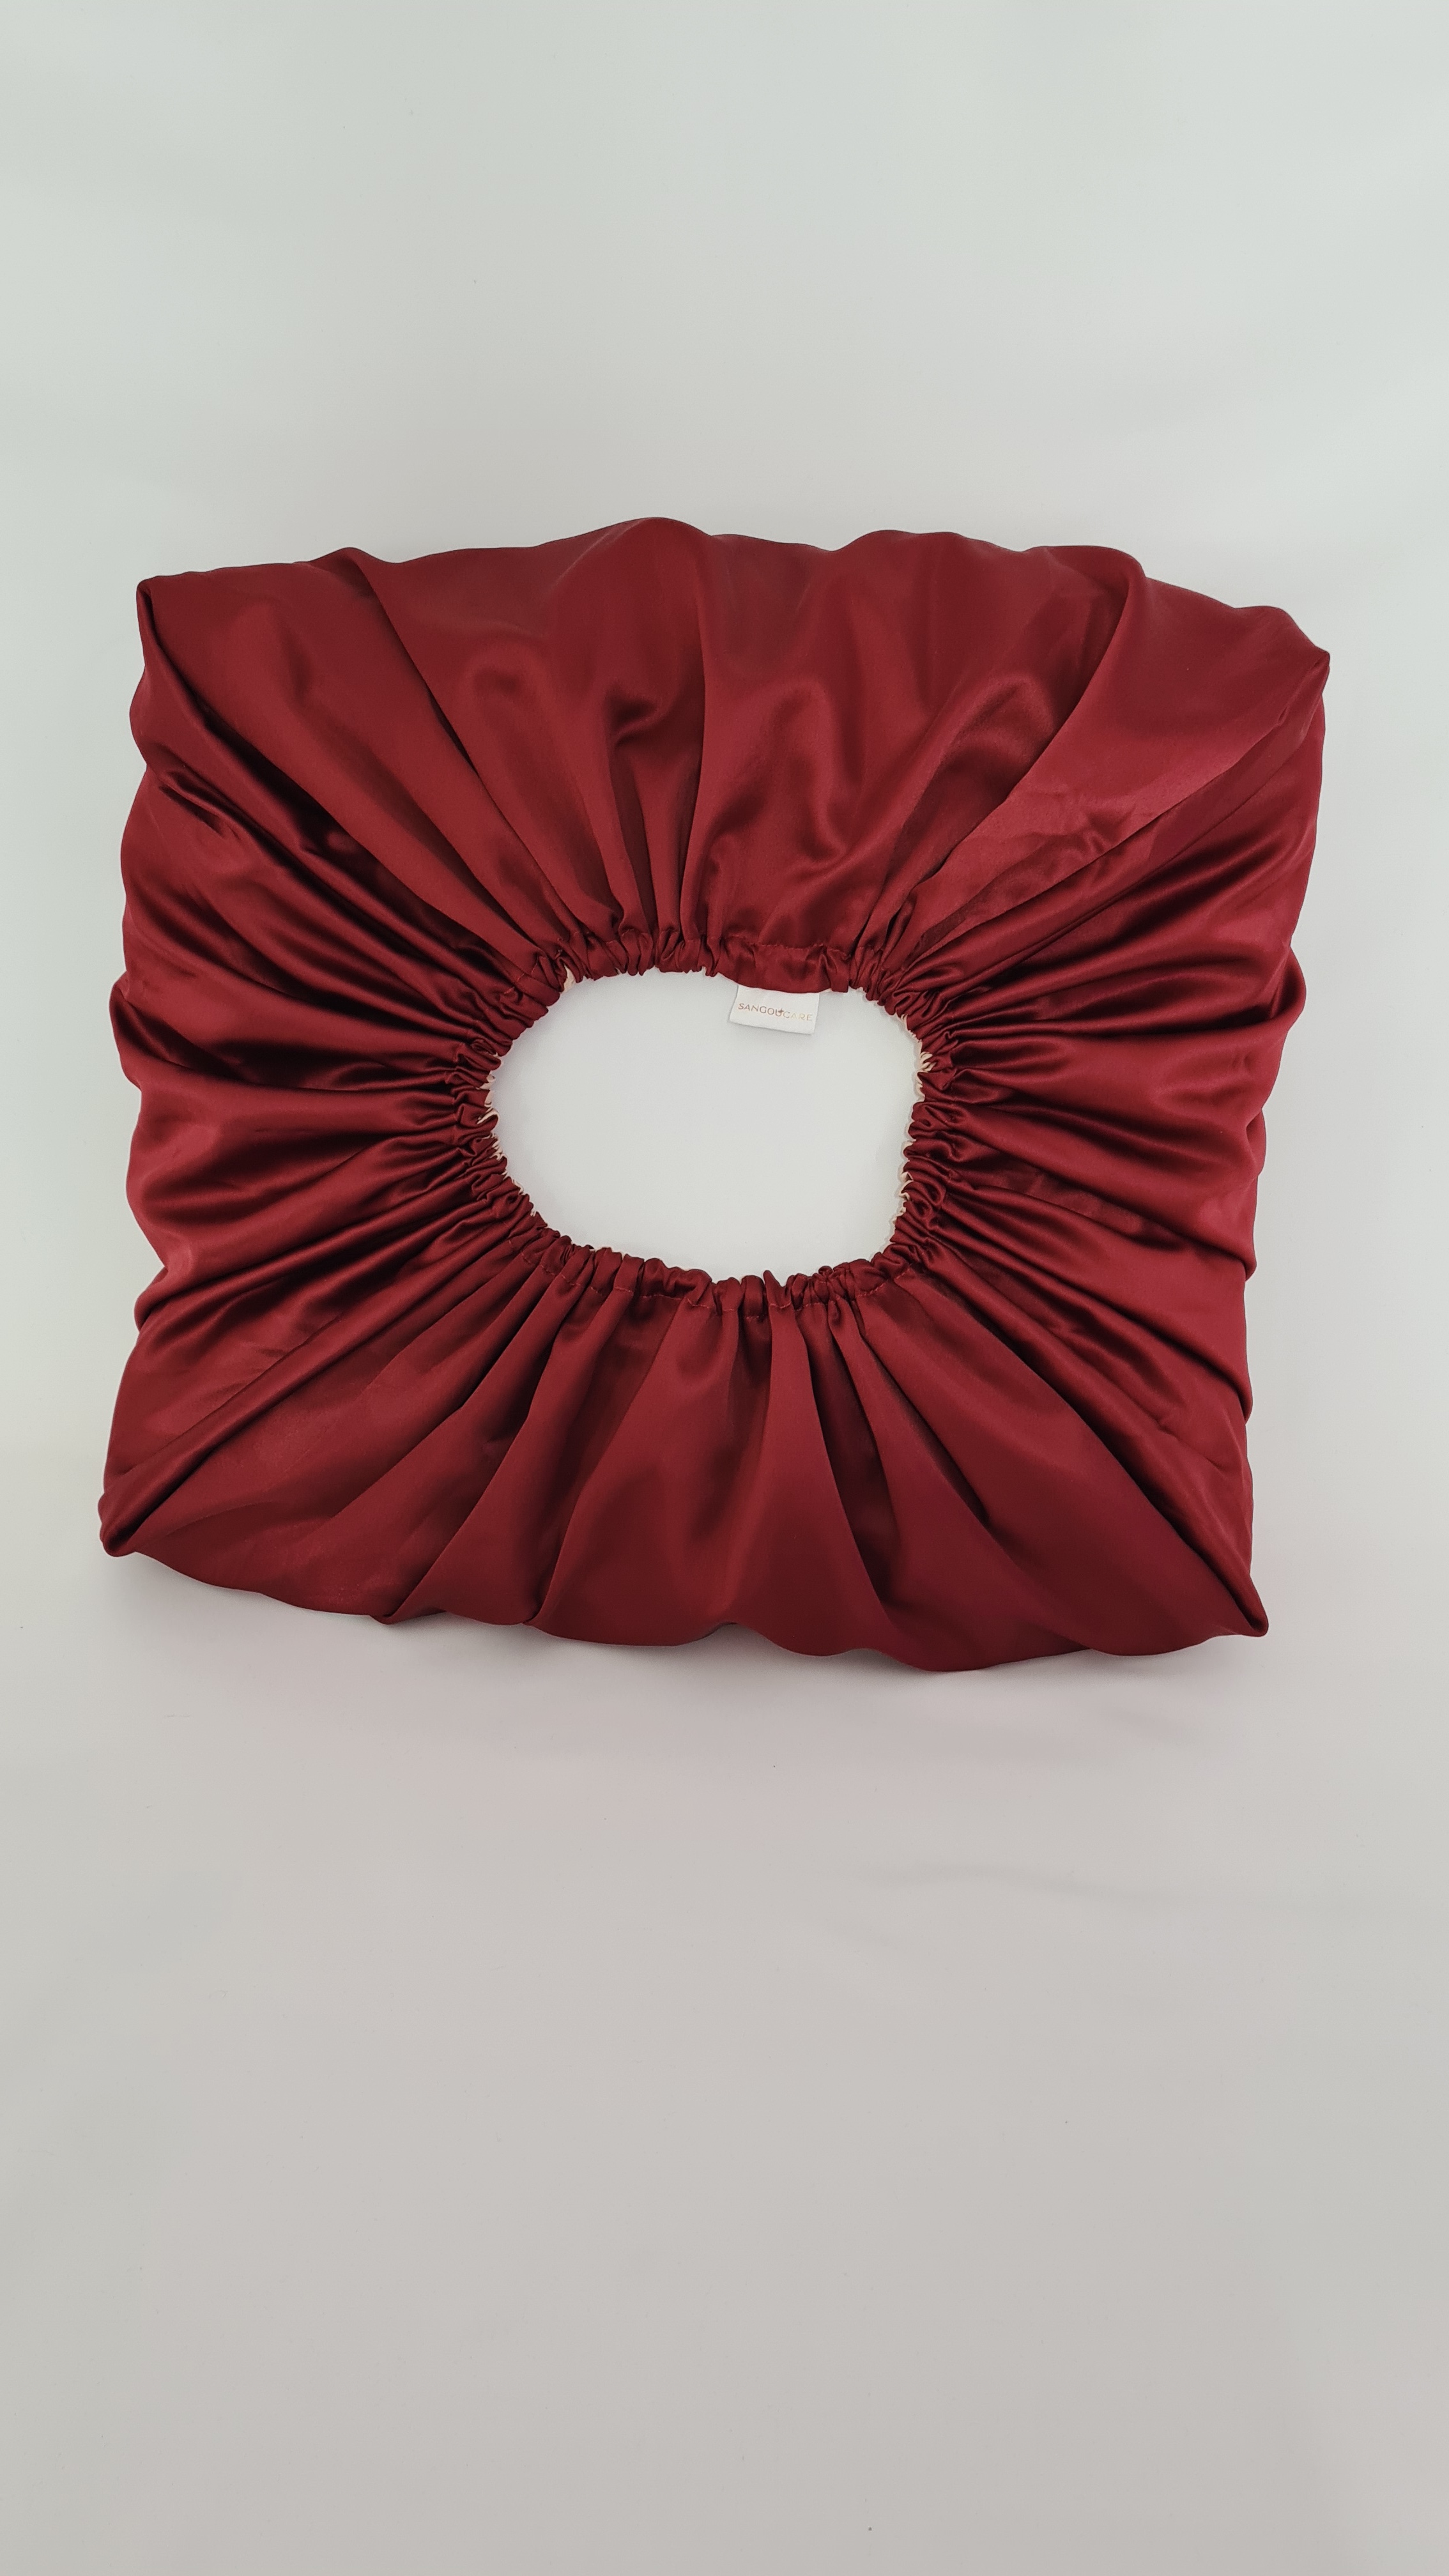 Taie d’oreiller en satin réversible (60×60 cm) – Rouge Bordeaux / Beige